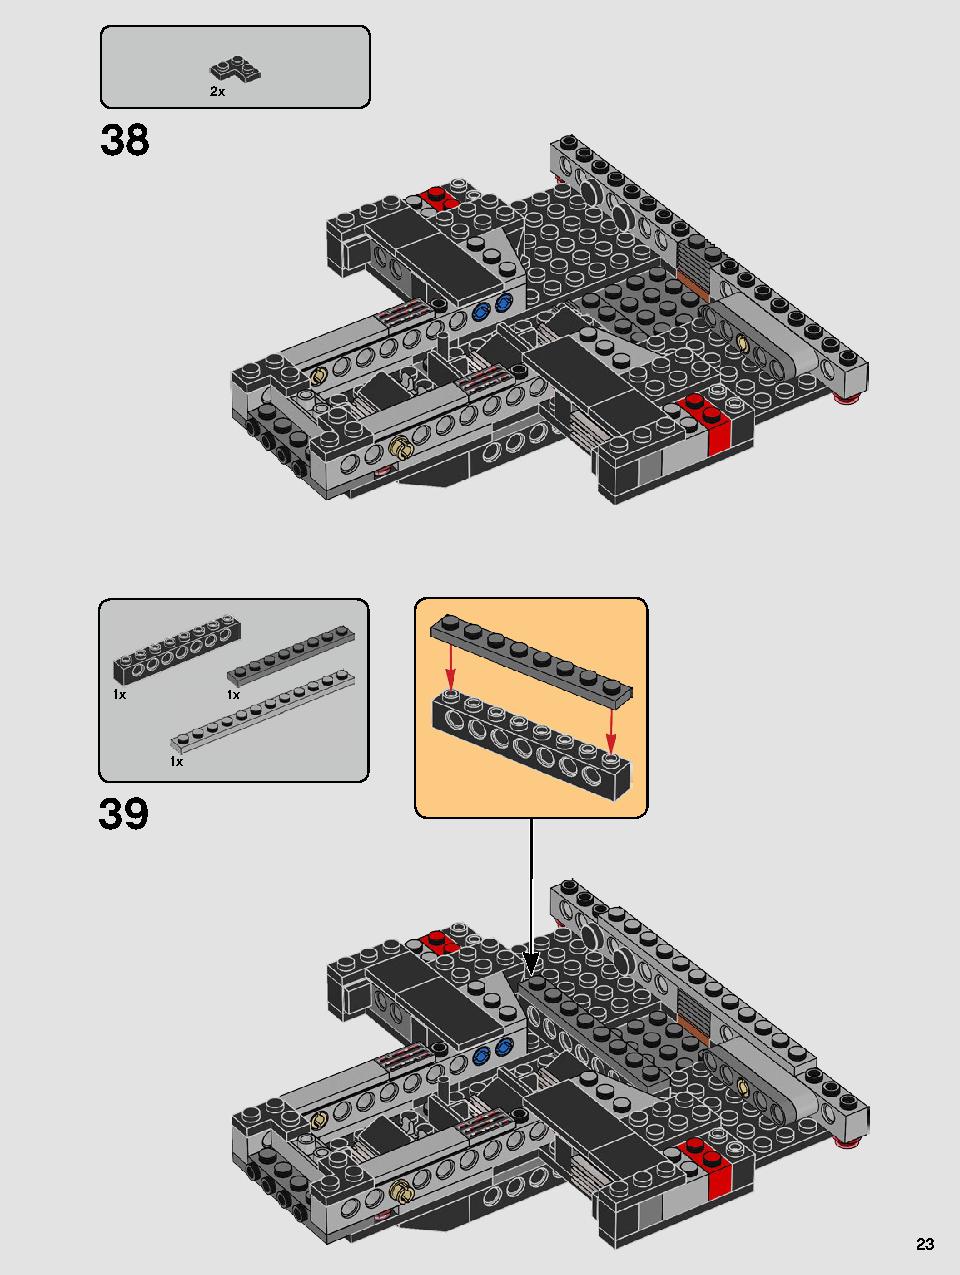 스타워즈 카일로 렌의 셔틀™ 75256 레고 세트 제품정보 레고 조립설명서 23 page